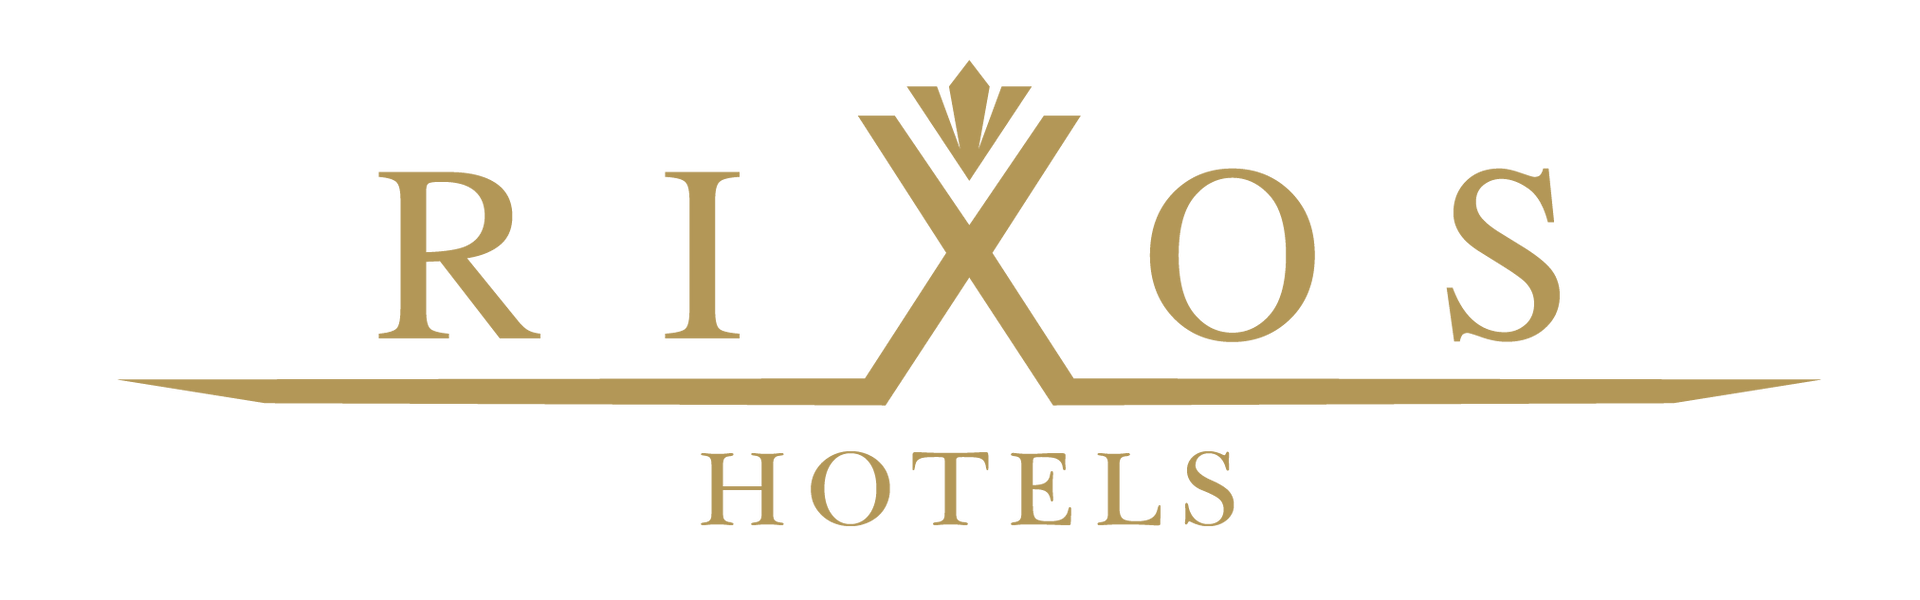 Rixos Hotels Offers